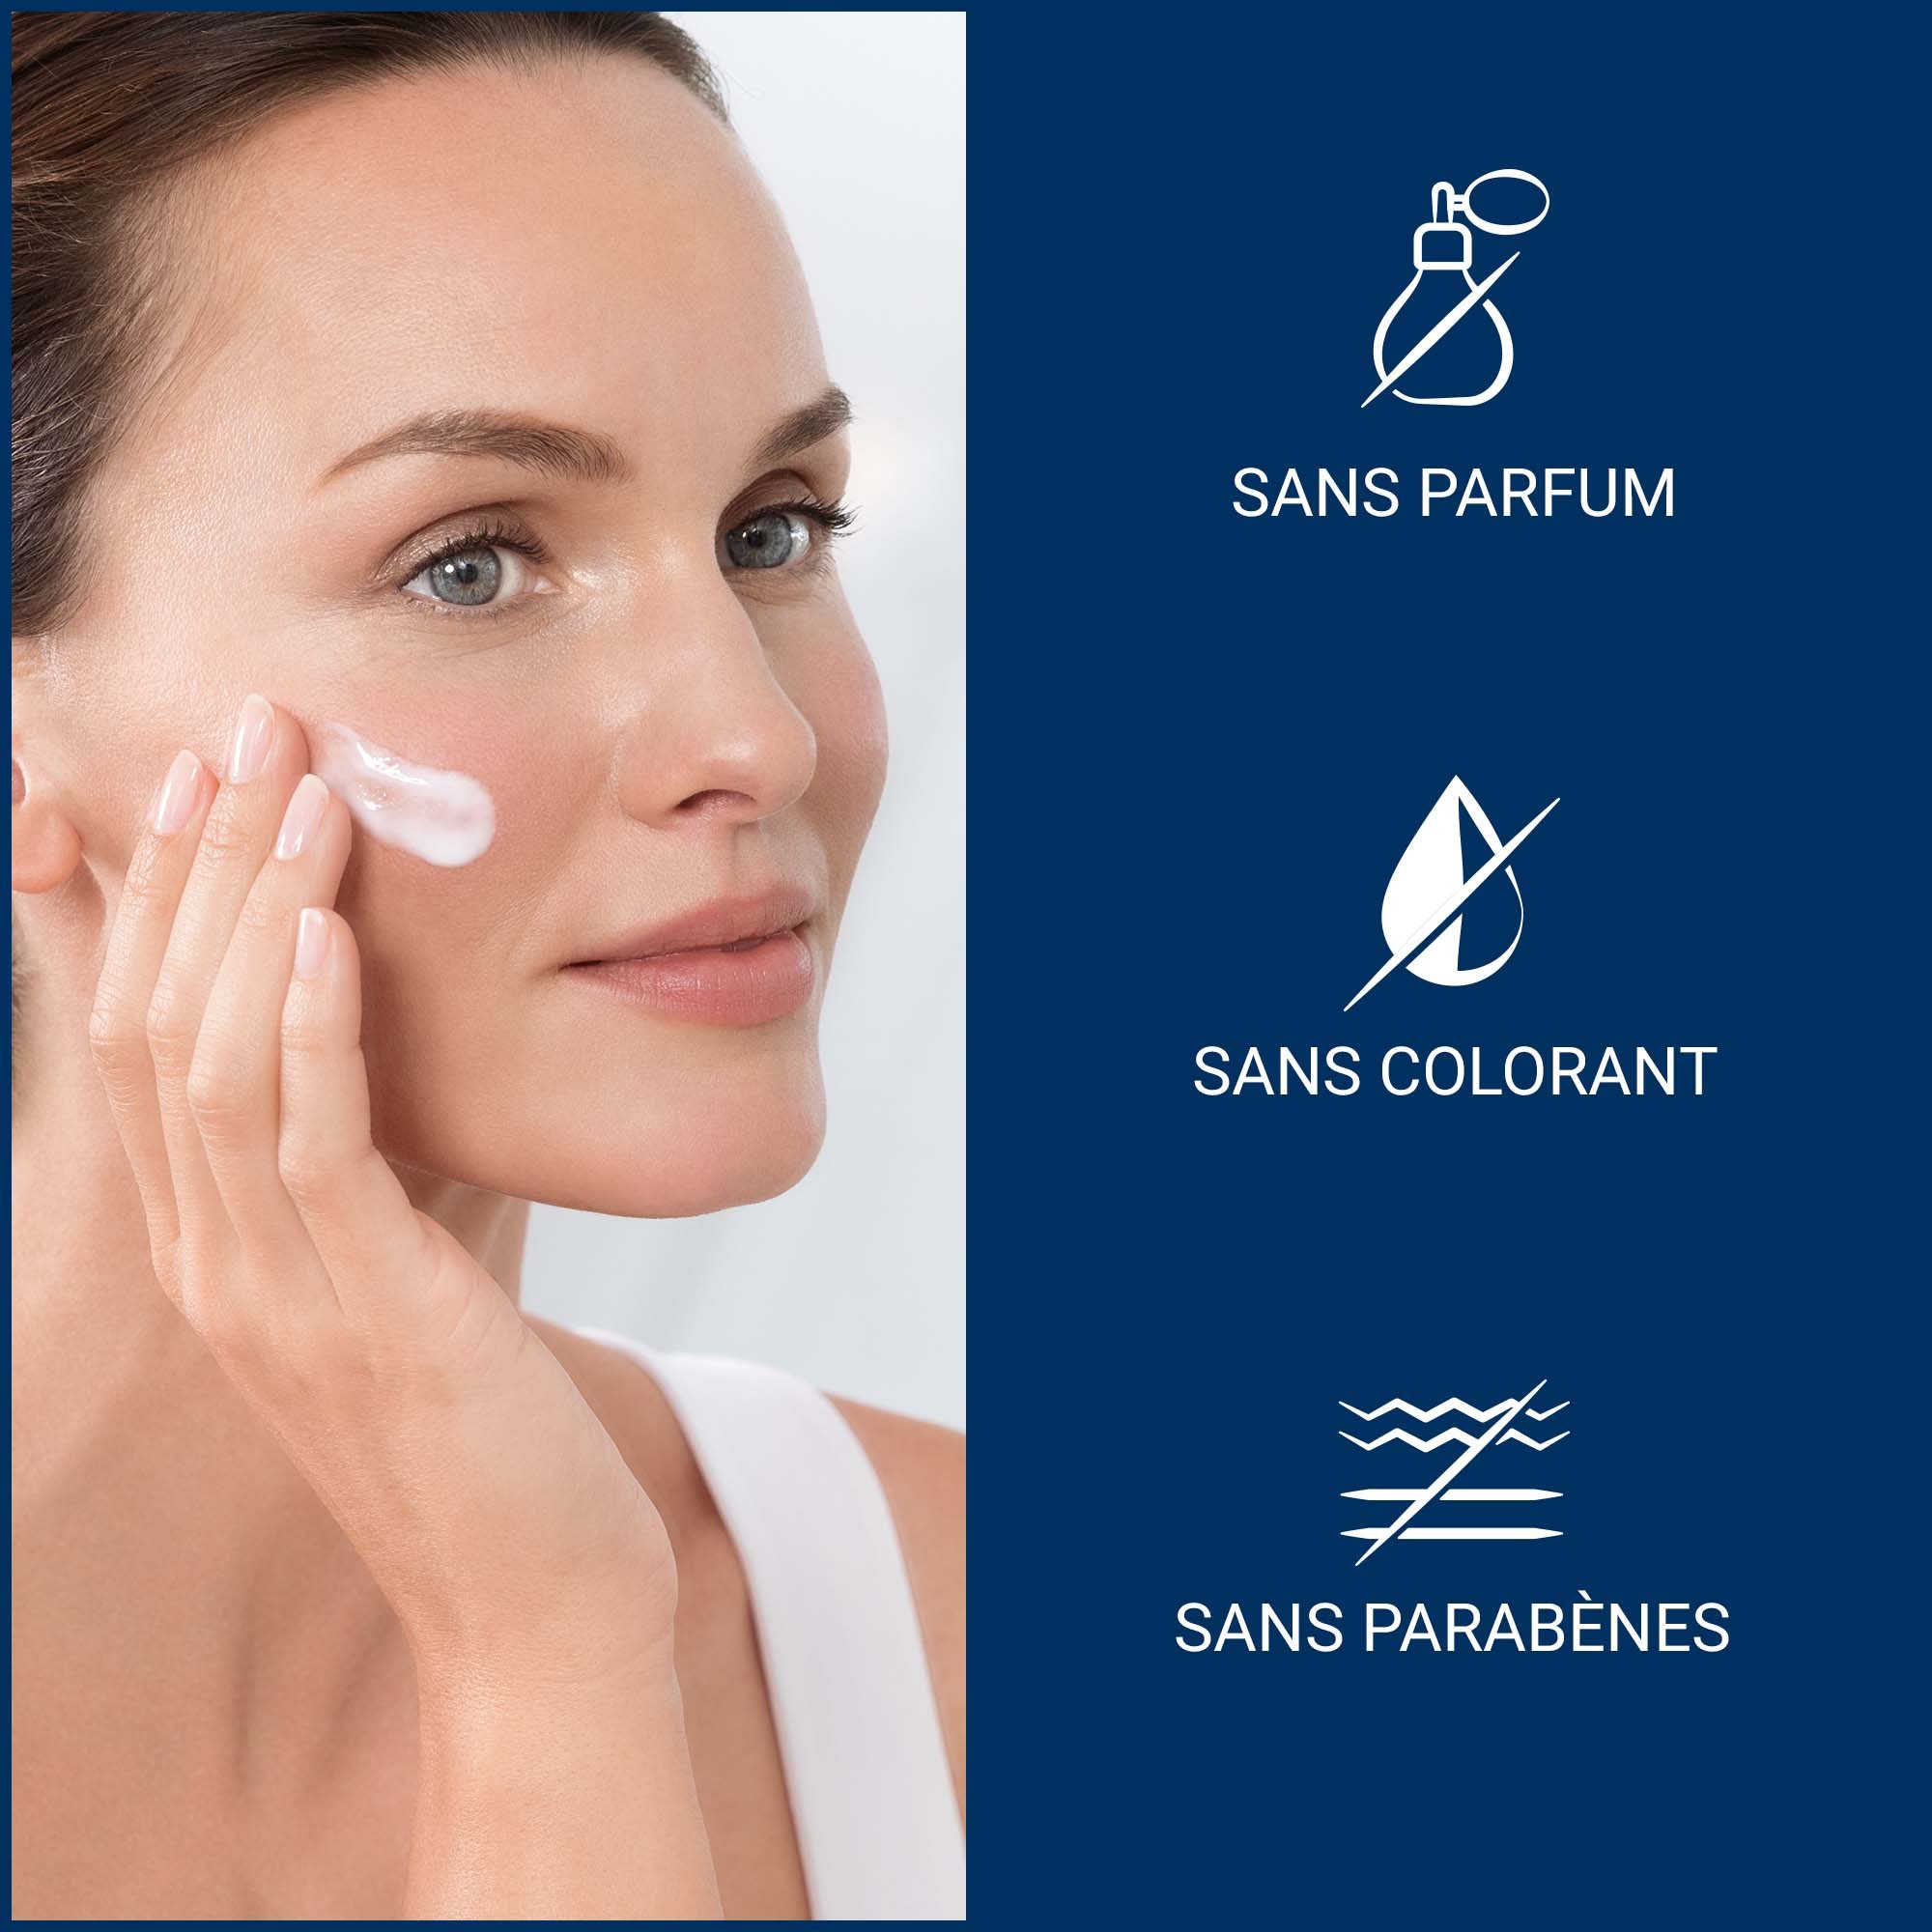 En gros plan, à gauche, une femme applique la Crème régénératrice pour le visage Urea Repair Eucerin soins de nuit sur sa joue, tandis qu’à droite, on peut lire trois caractéristiques du produit.